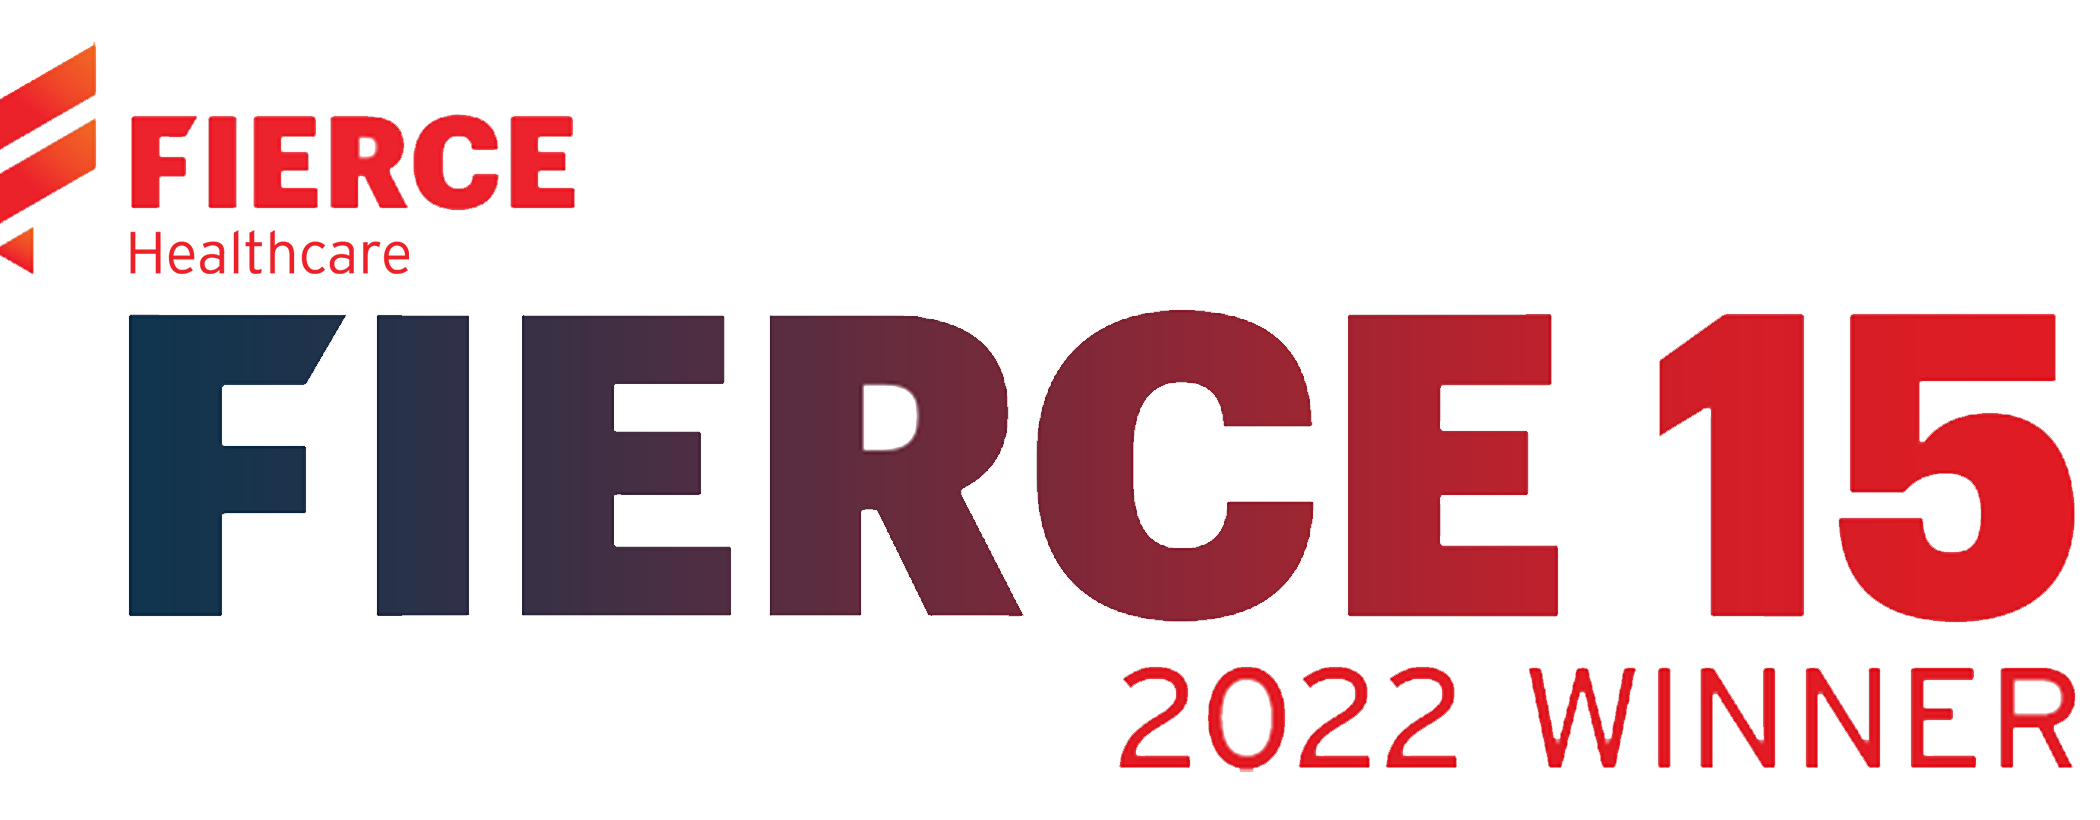 Fierce15_2022-1